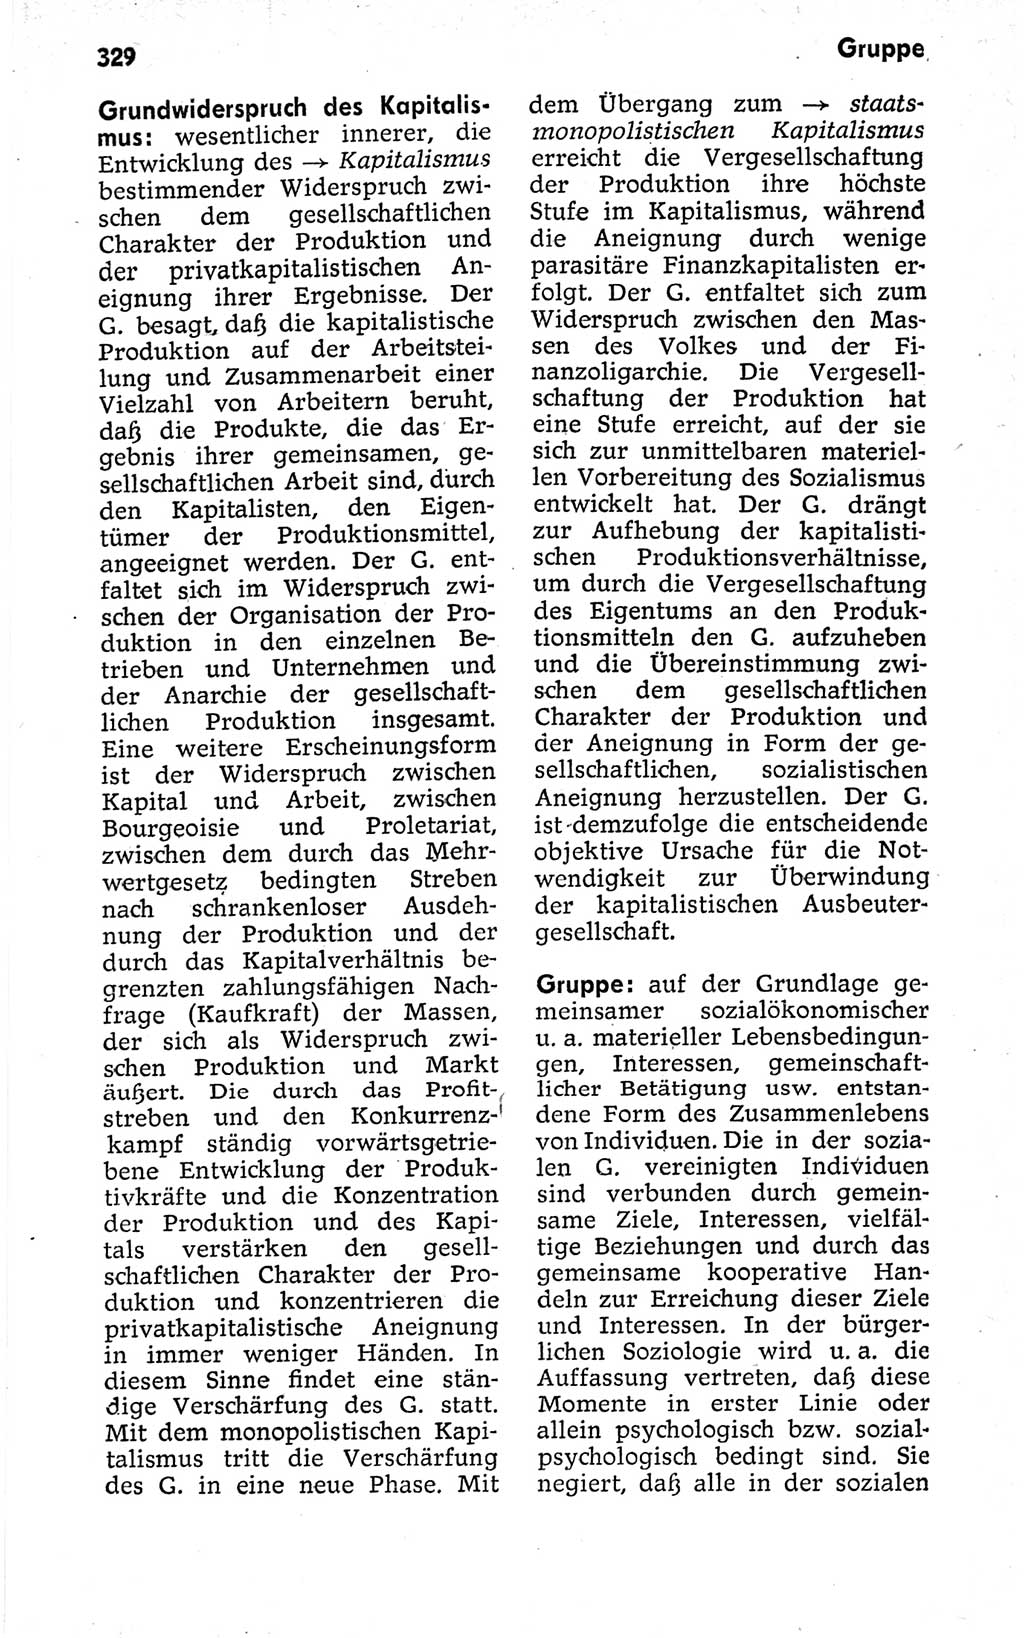 Kleines politisches Wörterbuch [Deutsche Demokratische Republik (DDR)] 1973, Seite 329 (Kl. pol. Wb. DDR 1973, S. 329)